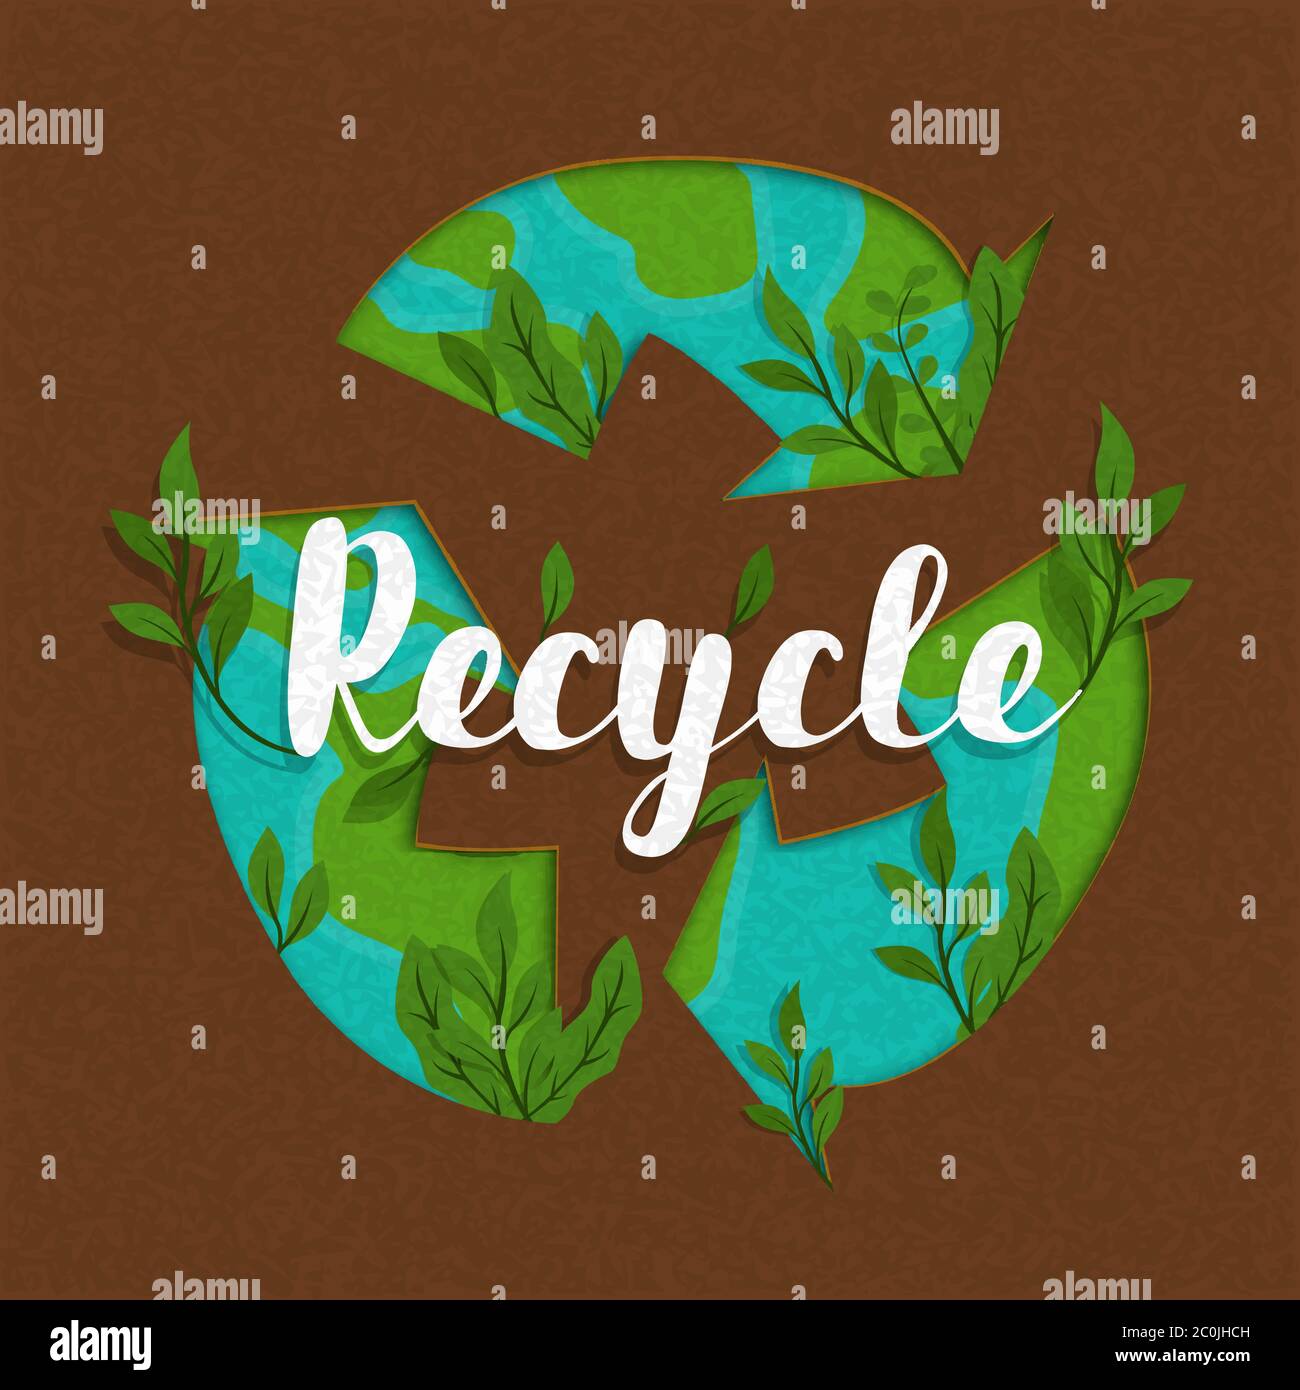 Recycling Symbol Illustration mit grüner Erde Planeten Karte und Pflanzen Blatt in recyceltem Papier Textur. Umwelt Hilfekonzept für Recycling-Aktivitäten. Stock Vektor